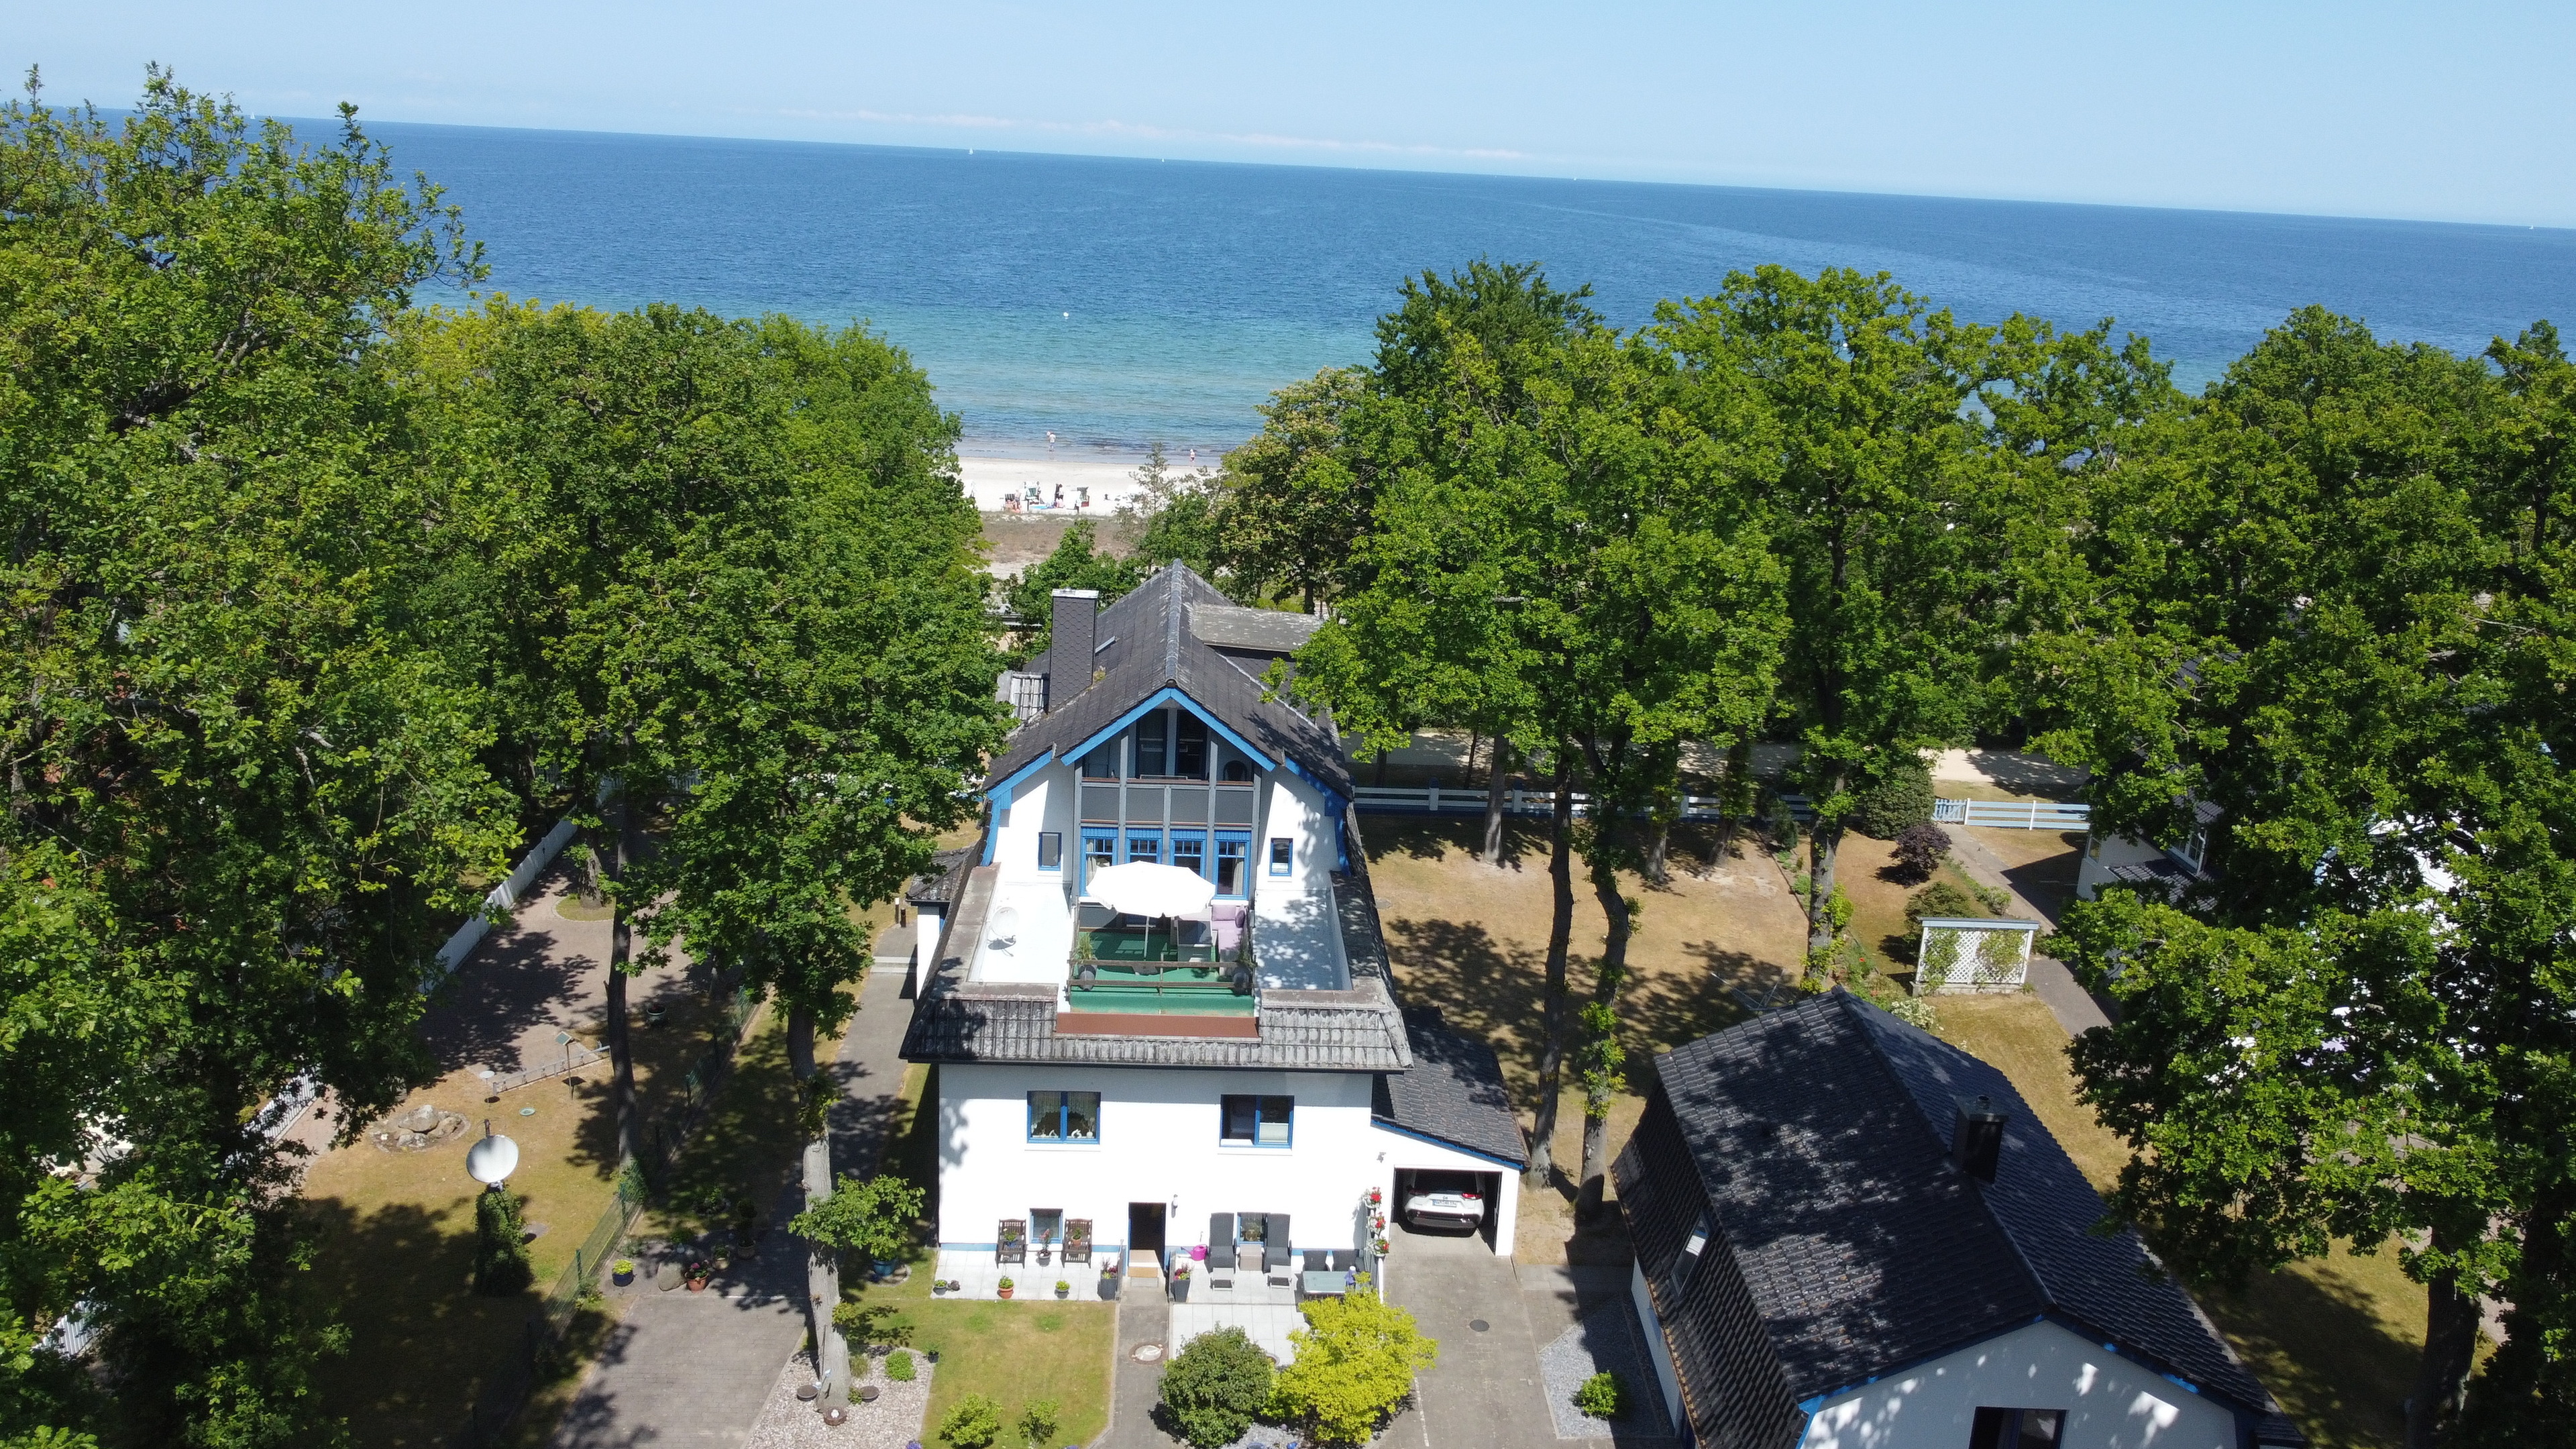 Strandhaus Seeperle, Whg. Seeblume Ferienwohnung an der Ostsee